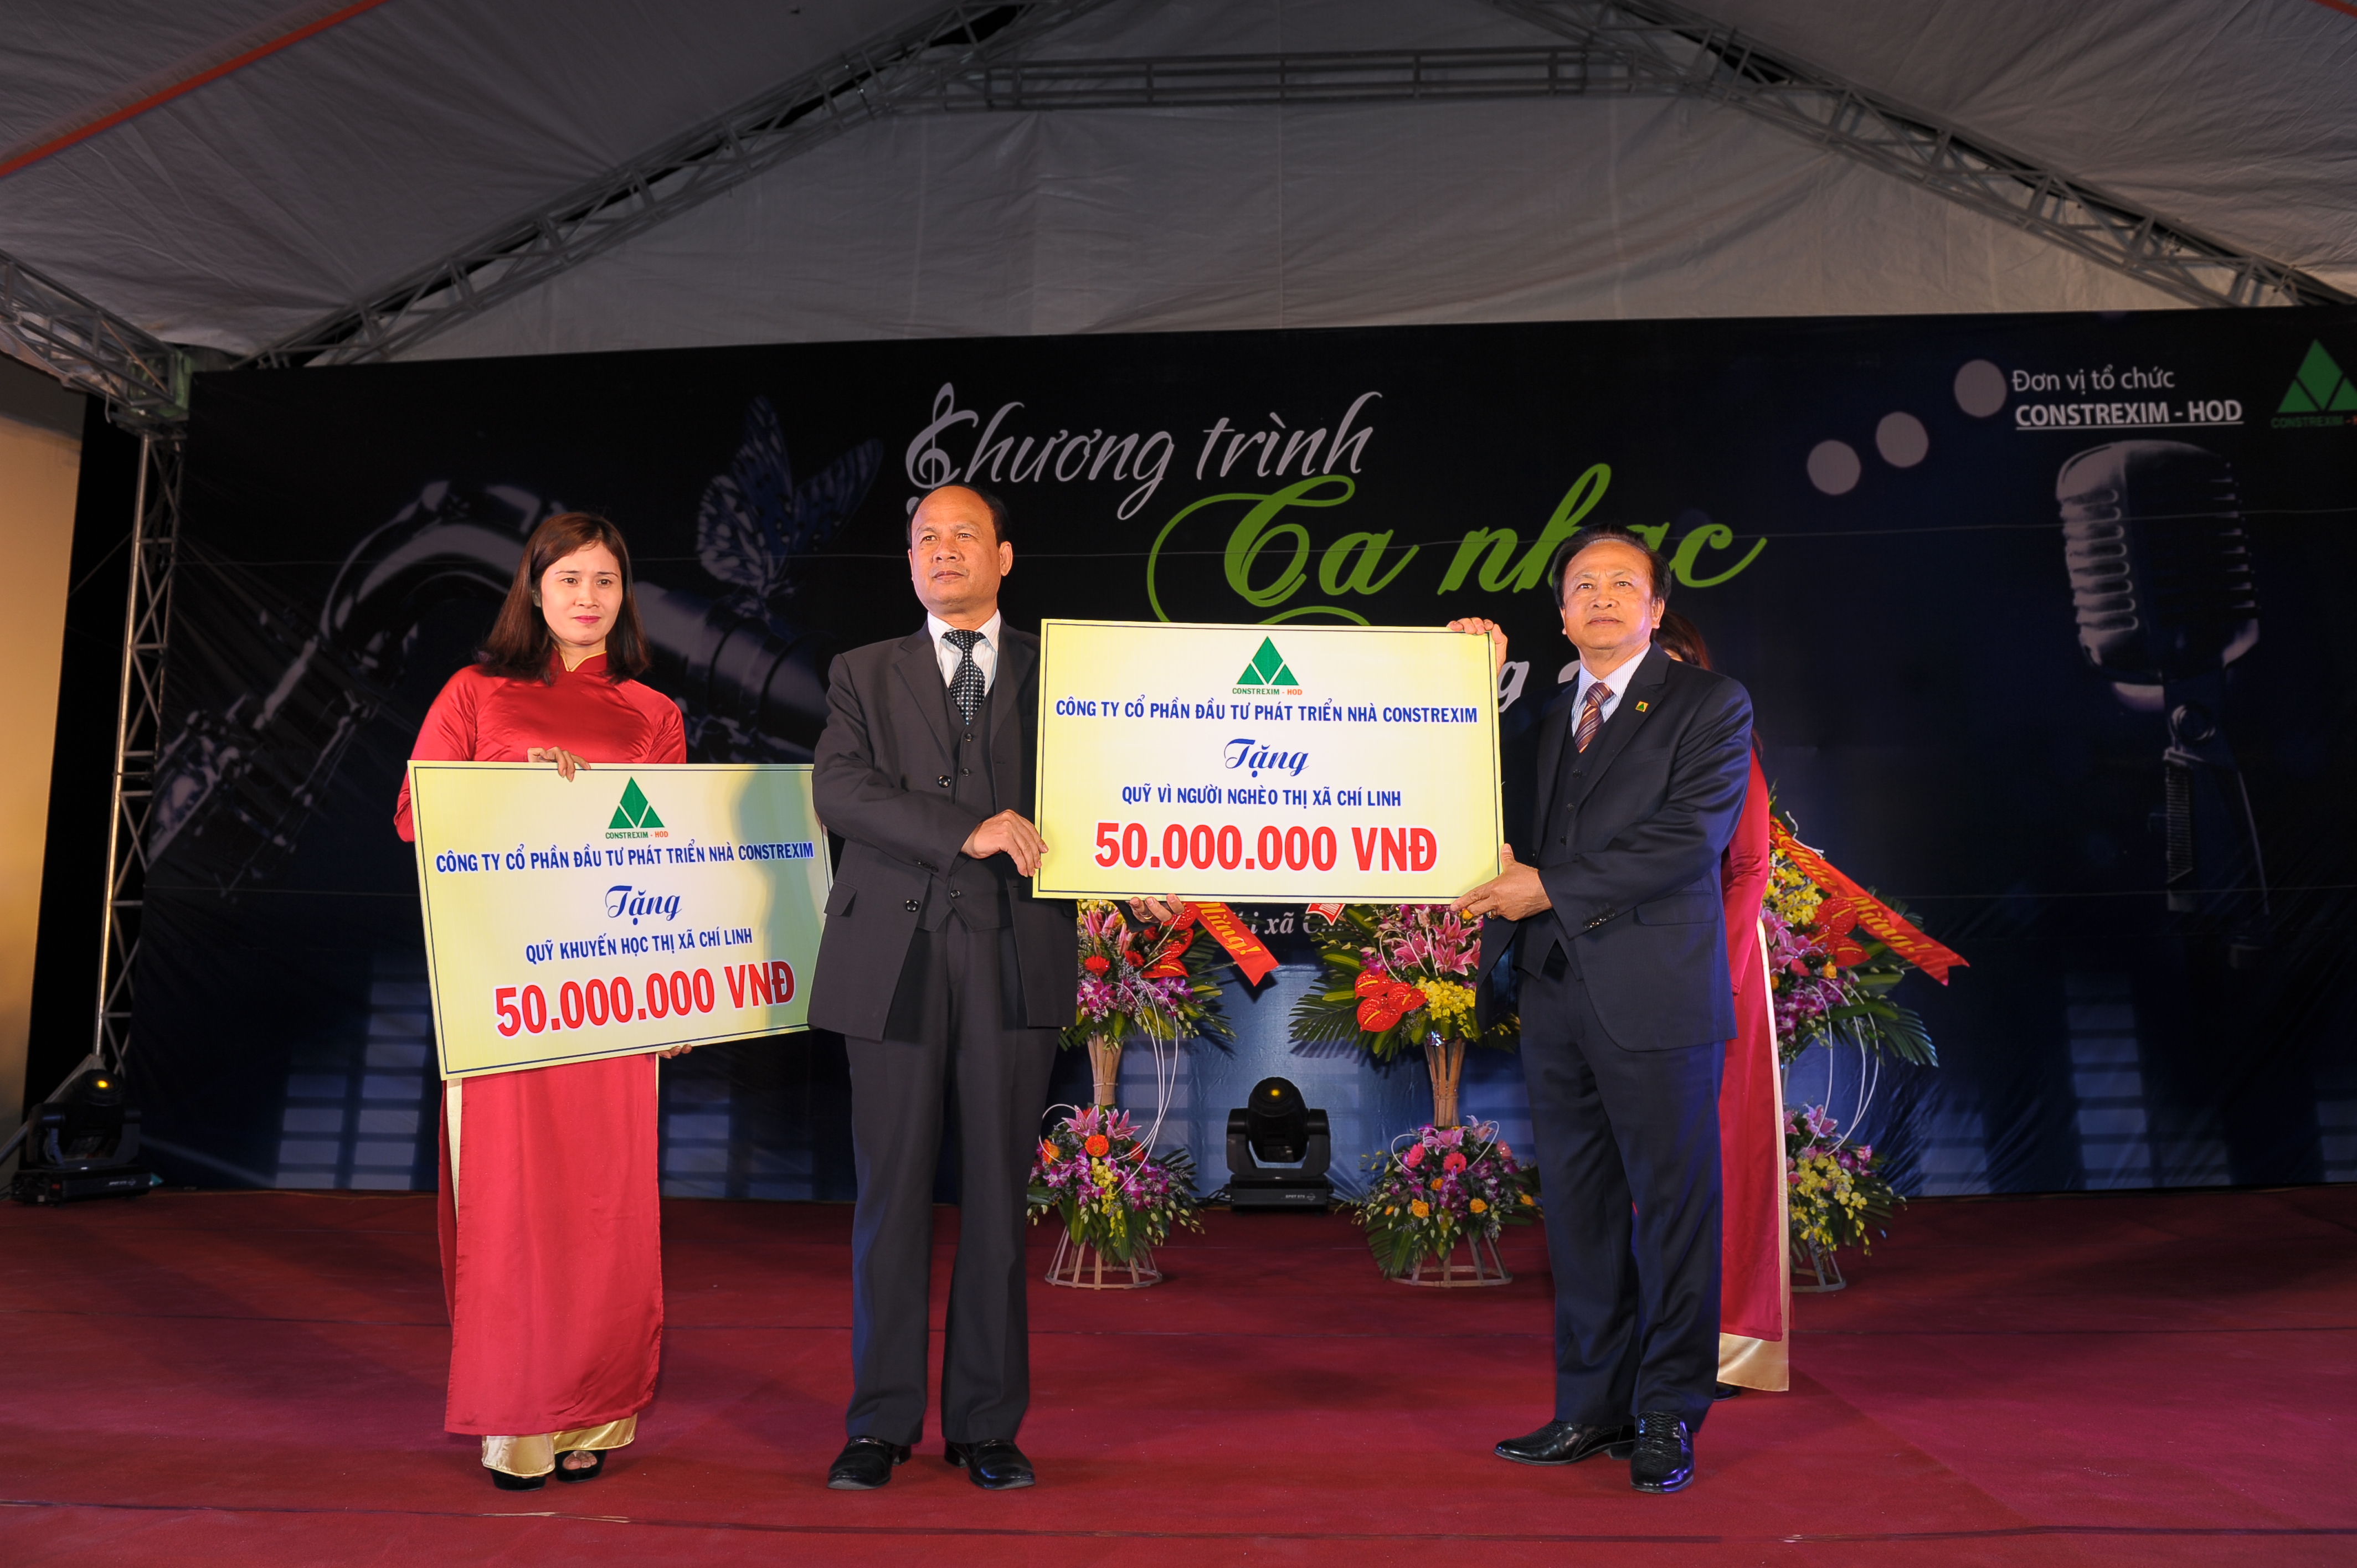 Công ty tặng quỹ vì người nghèo thành phố Chí Linh, tỉnh Hải Dương 50.000.000đ